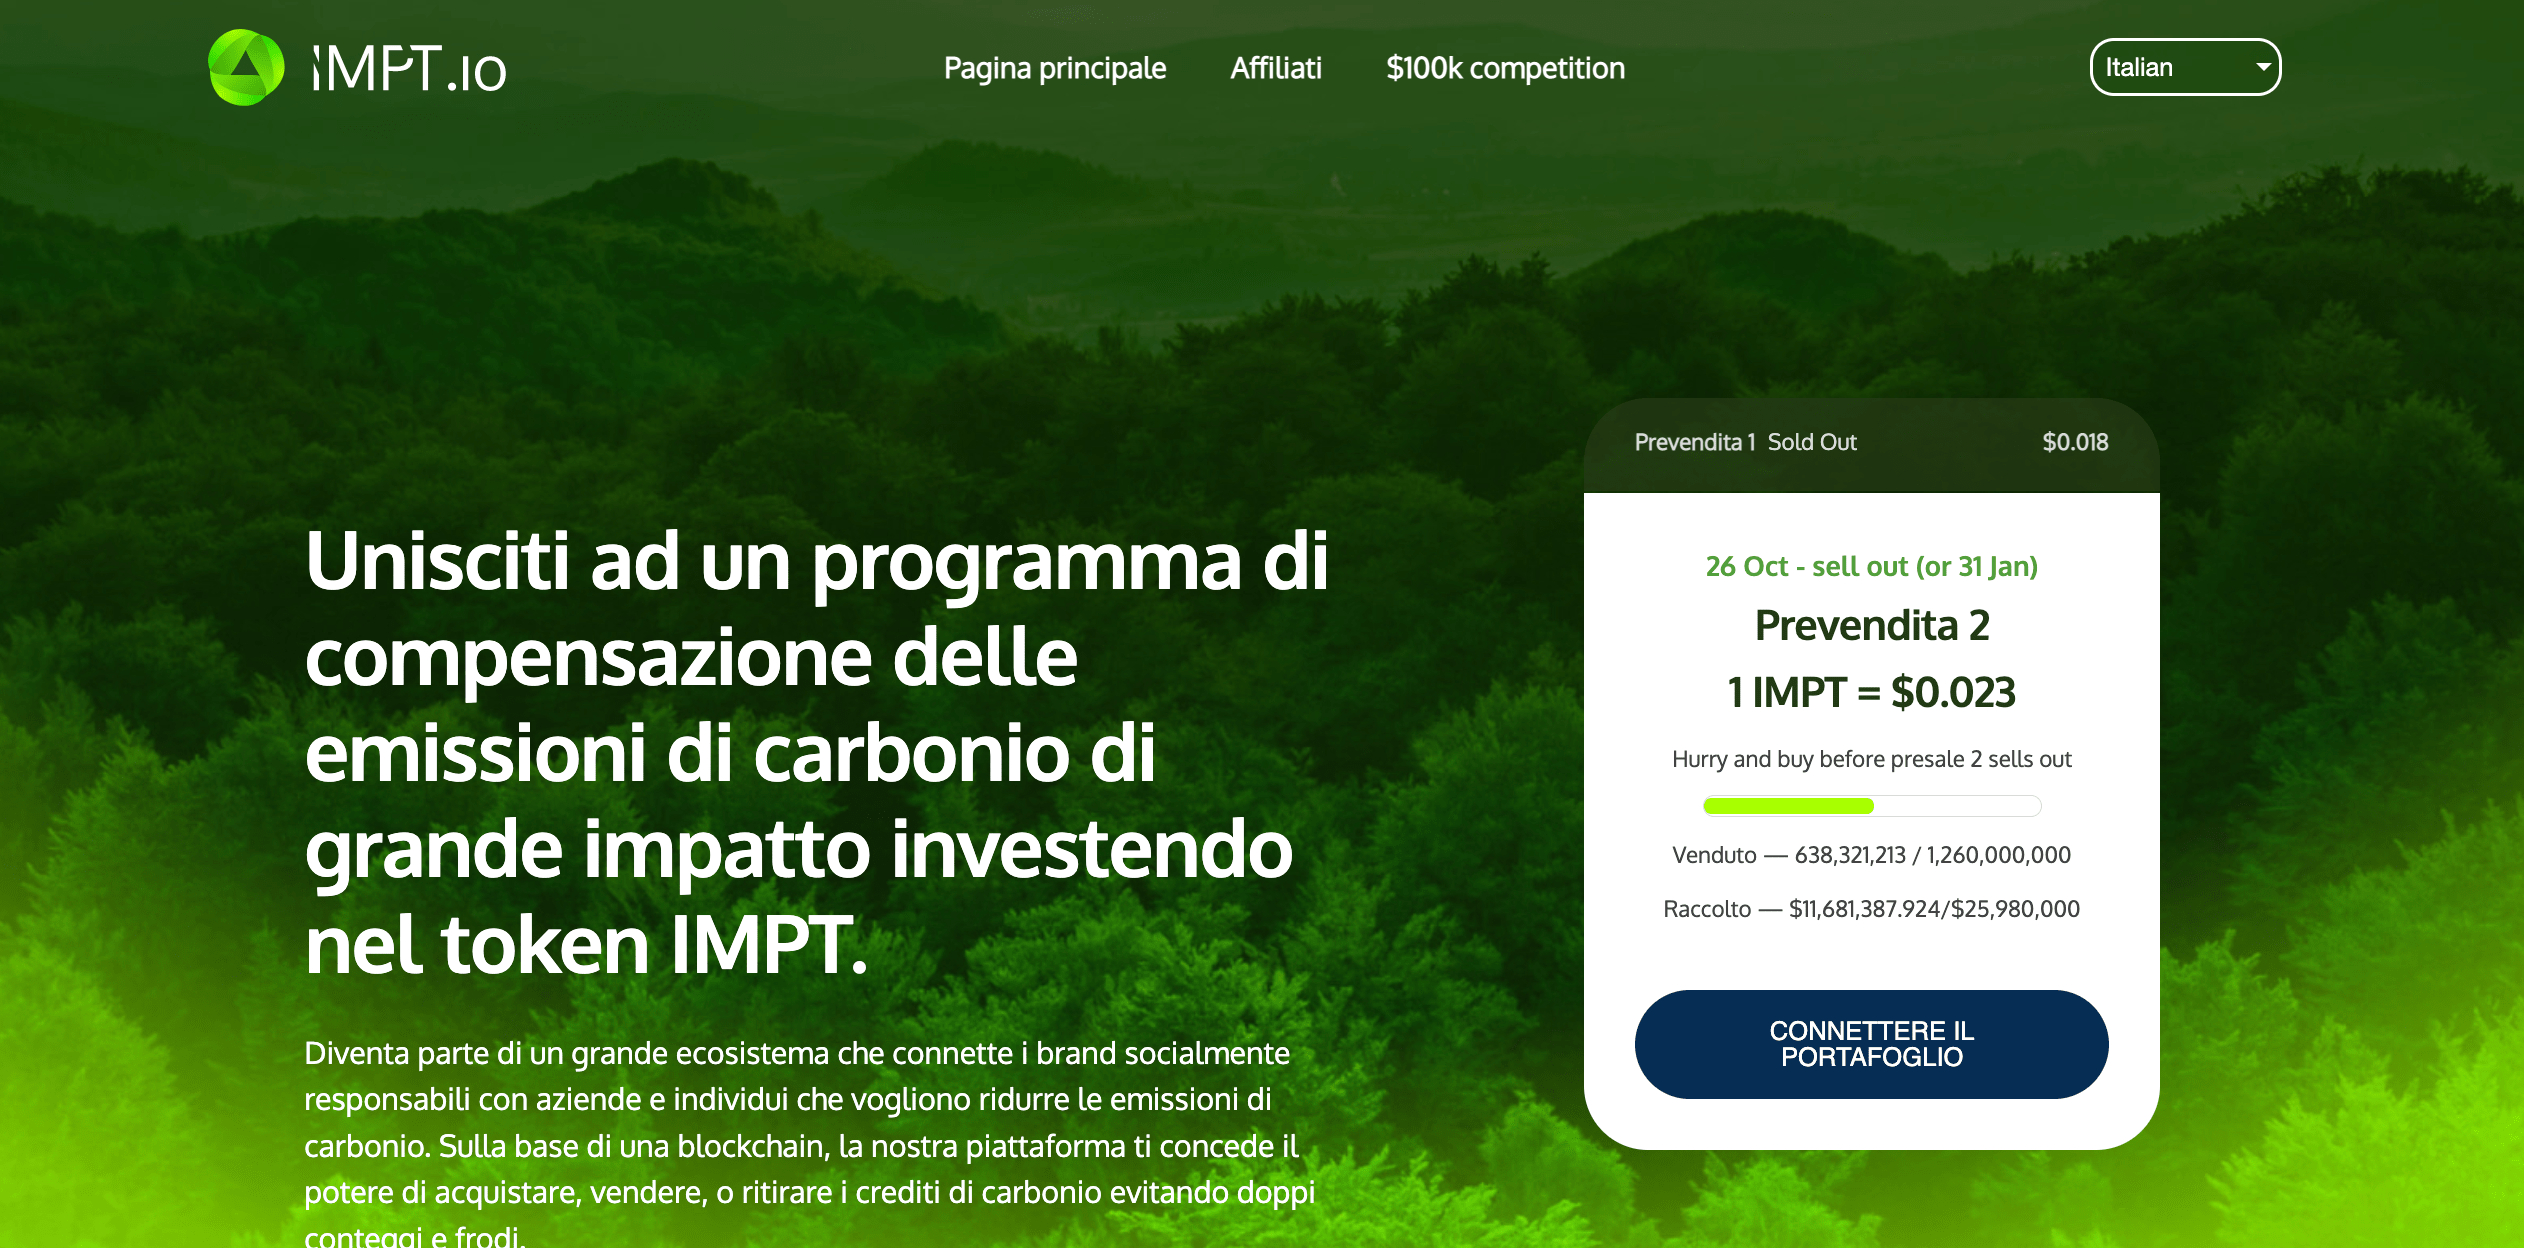 IMPT.io (IMPT) - Investi e scambia crediti di carbonio su blockchain